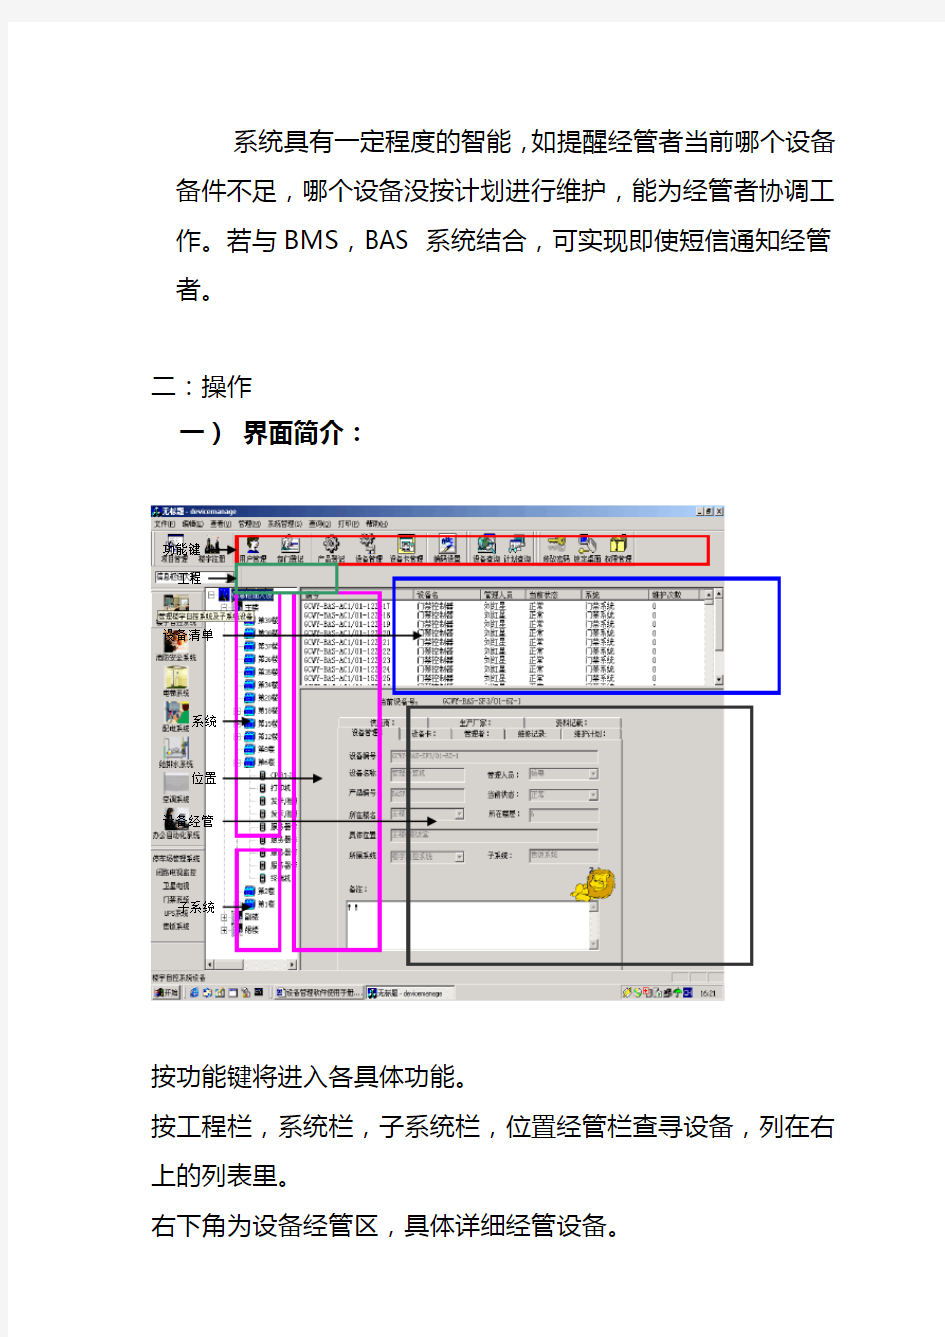 设备管理软件使用手册